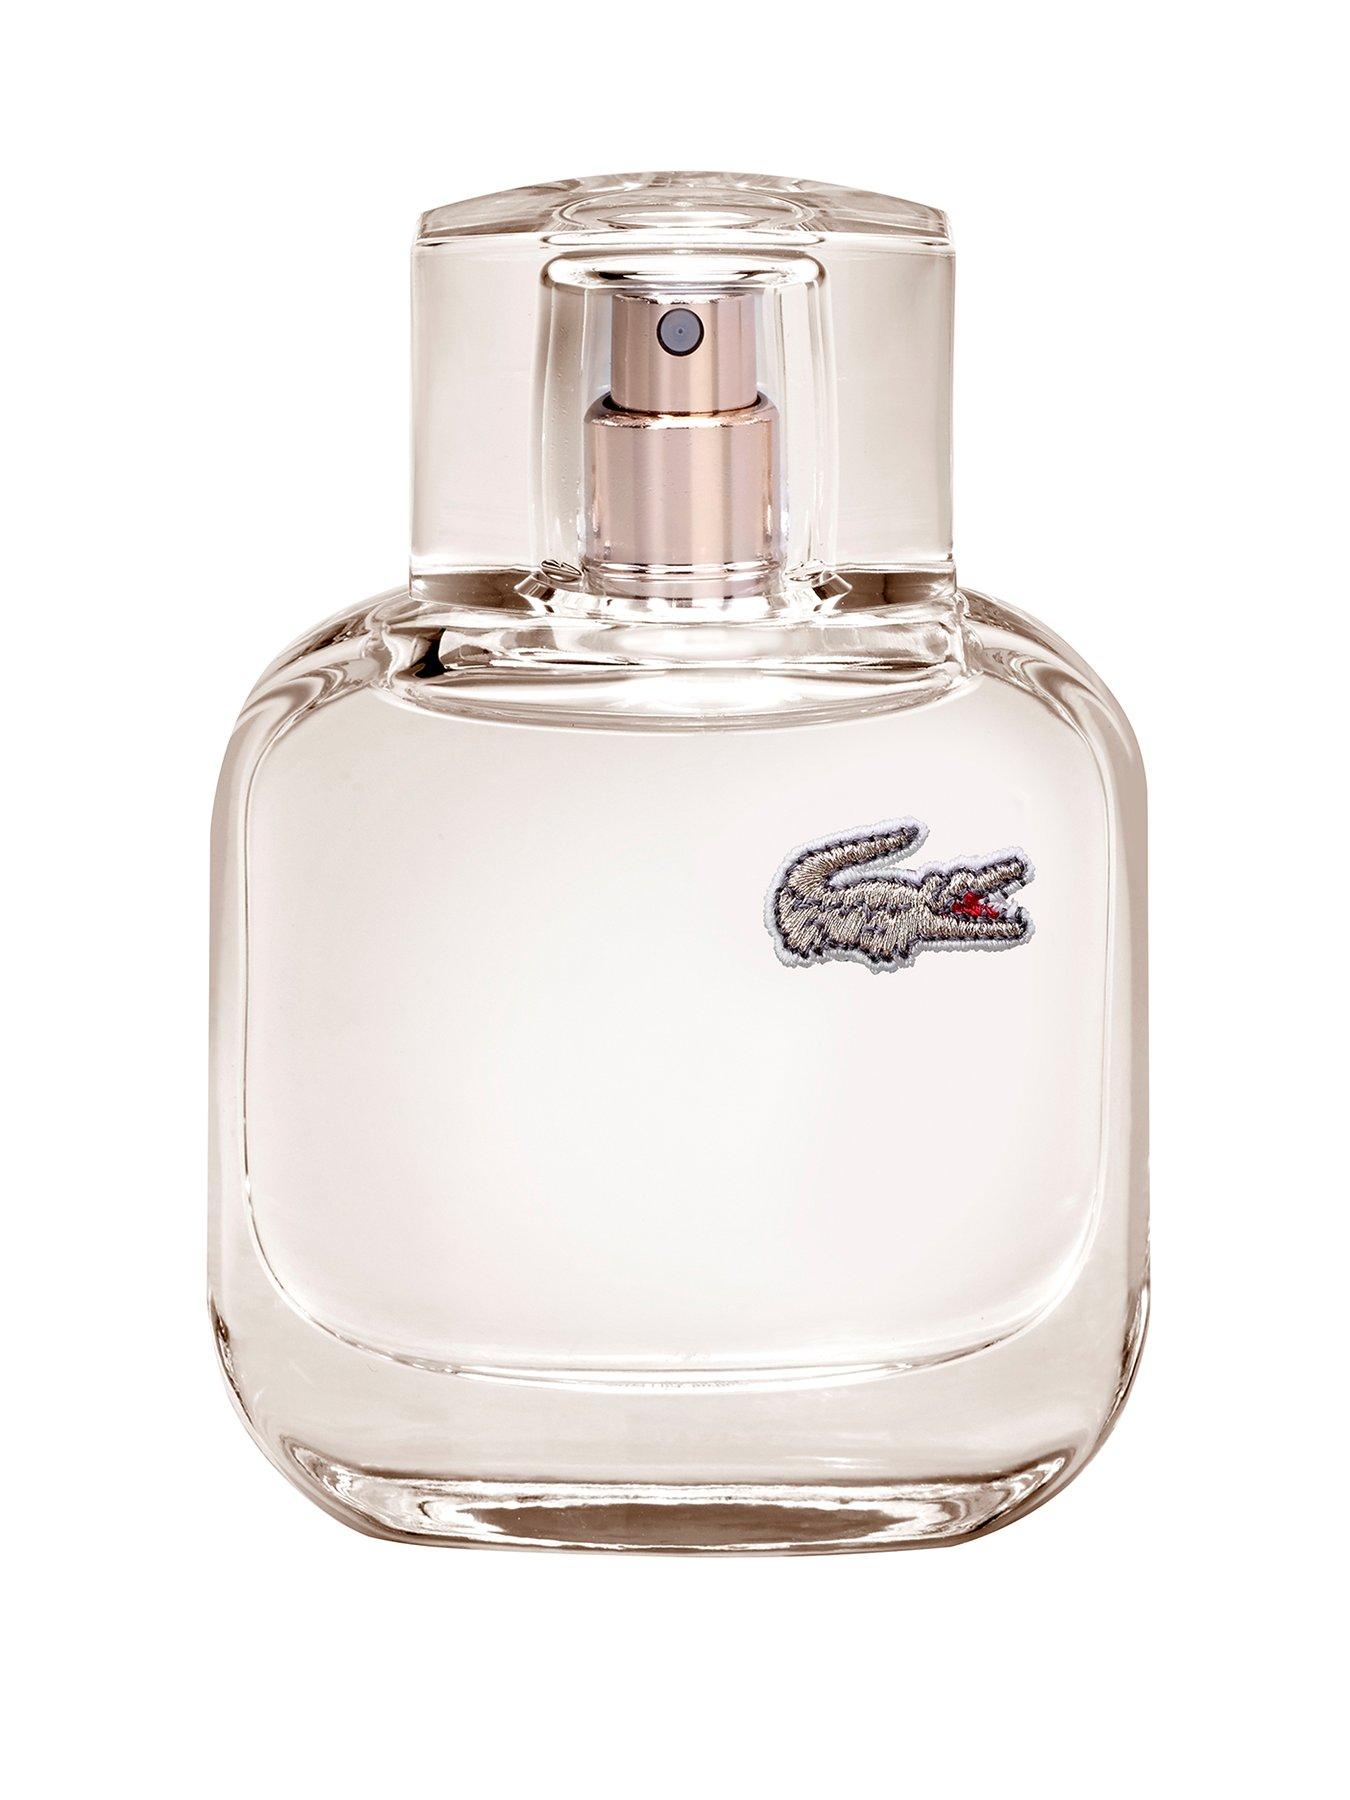 lacoste perfume 50ml